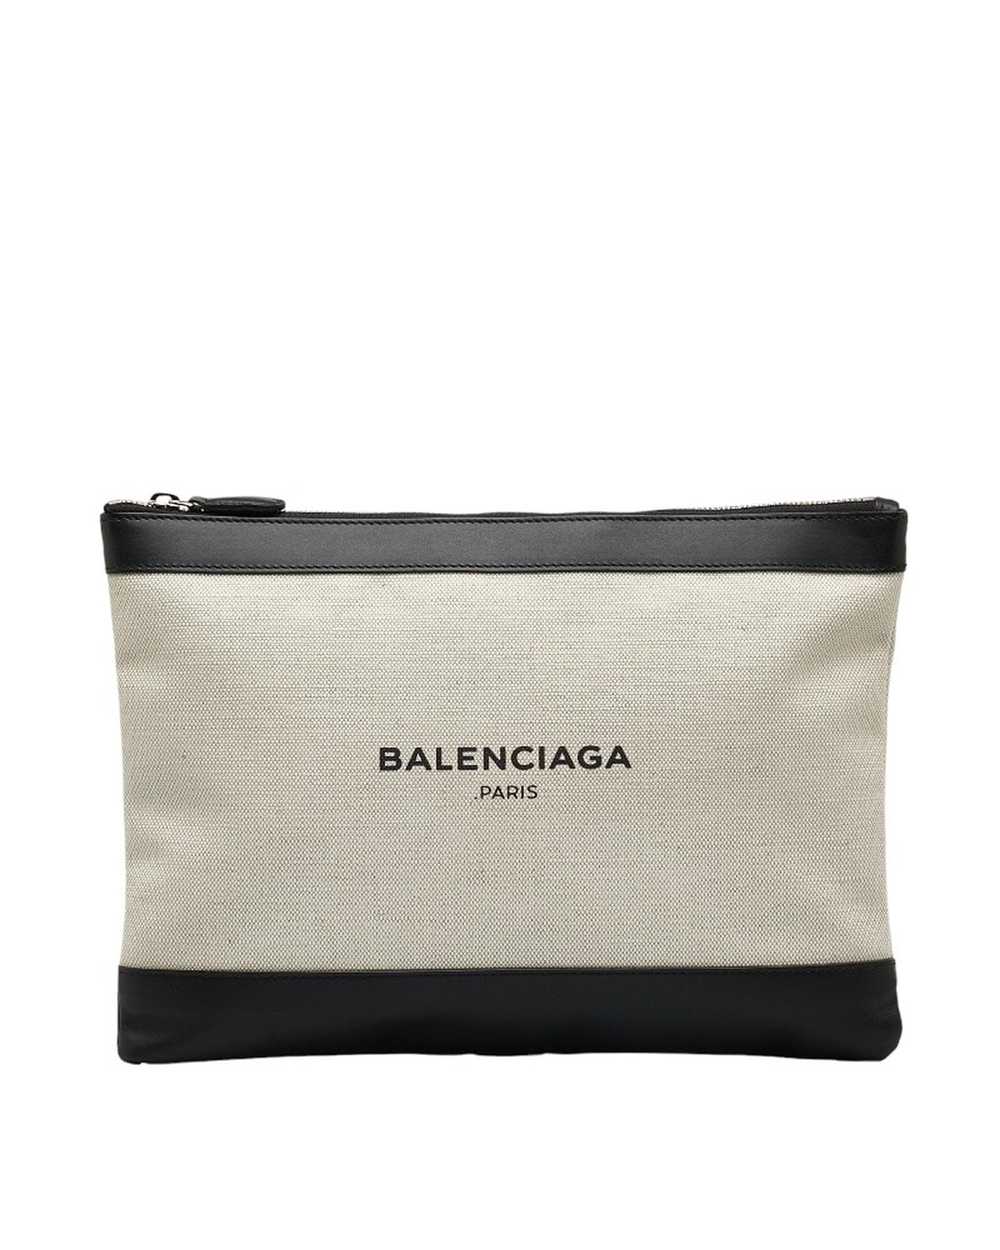 Balenciaga Navy Canvas Clutch Bag in Excellent Co… - image 1